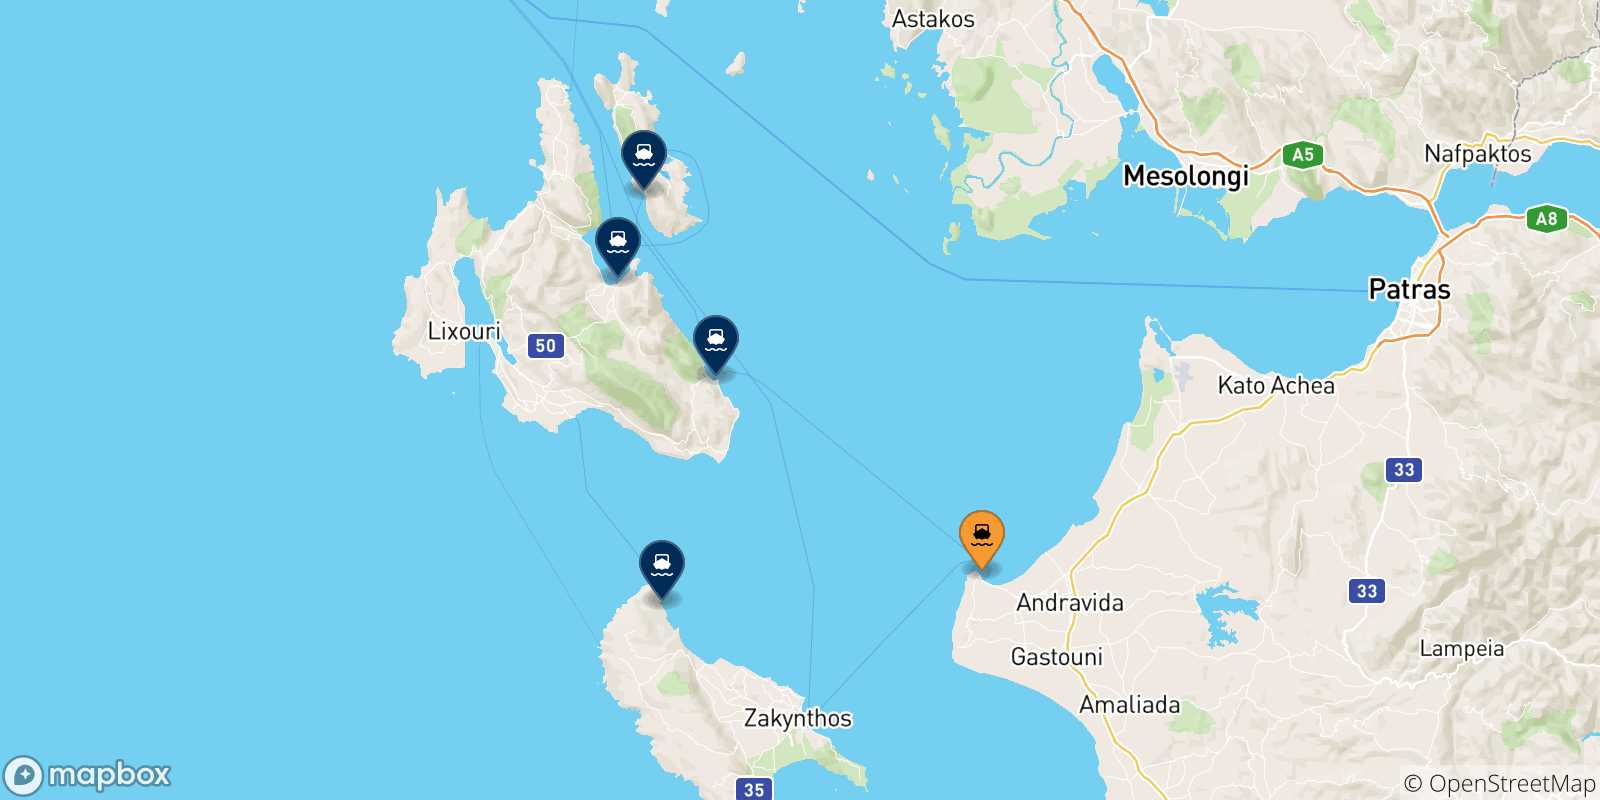 Mappa delle possibili rotte tra Killini e le Isole Ionie